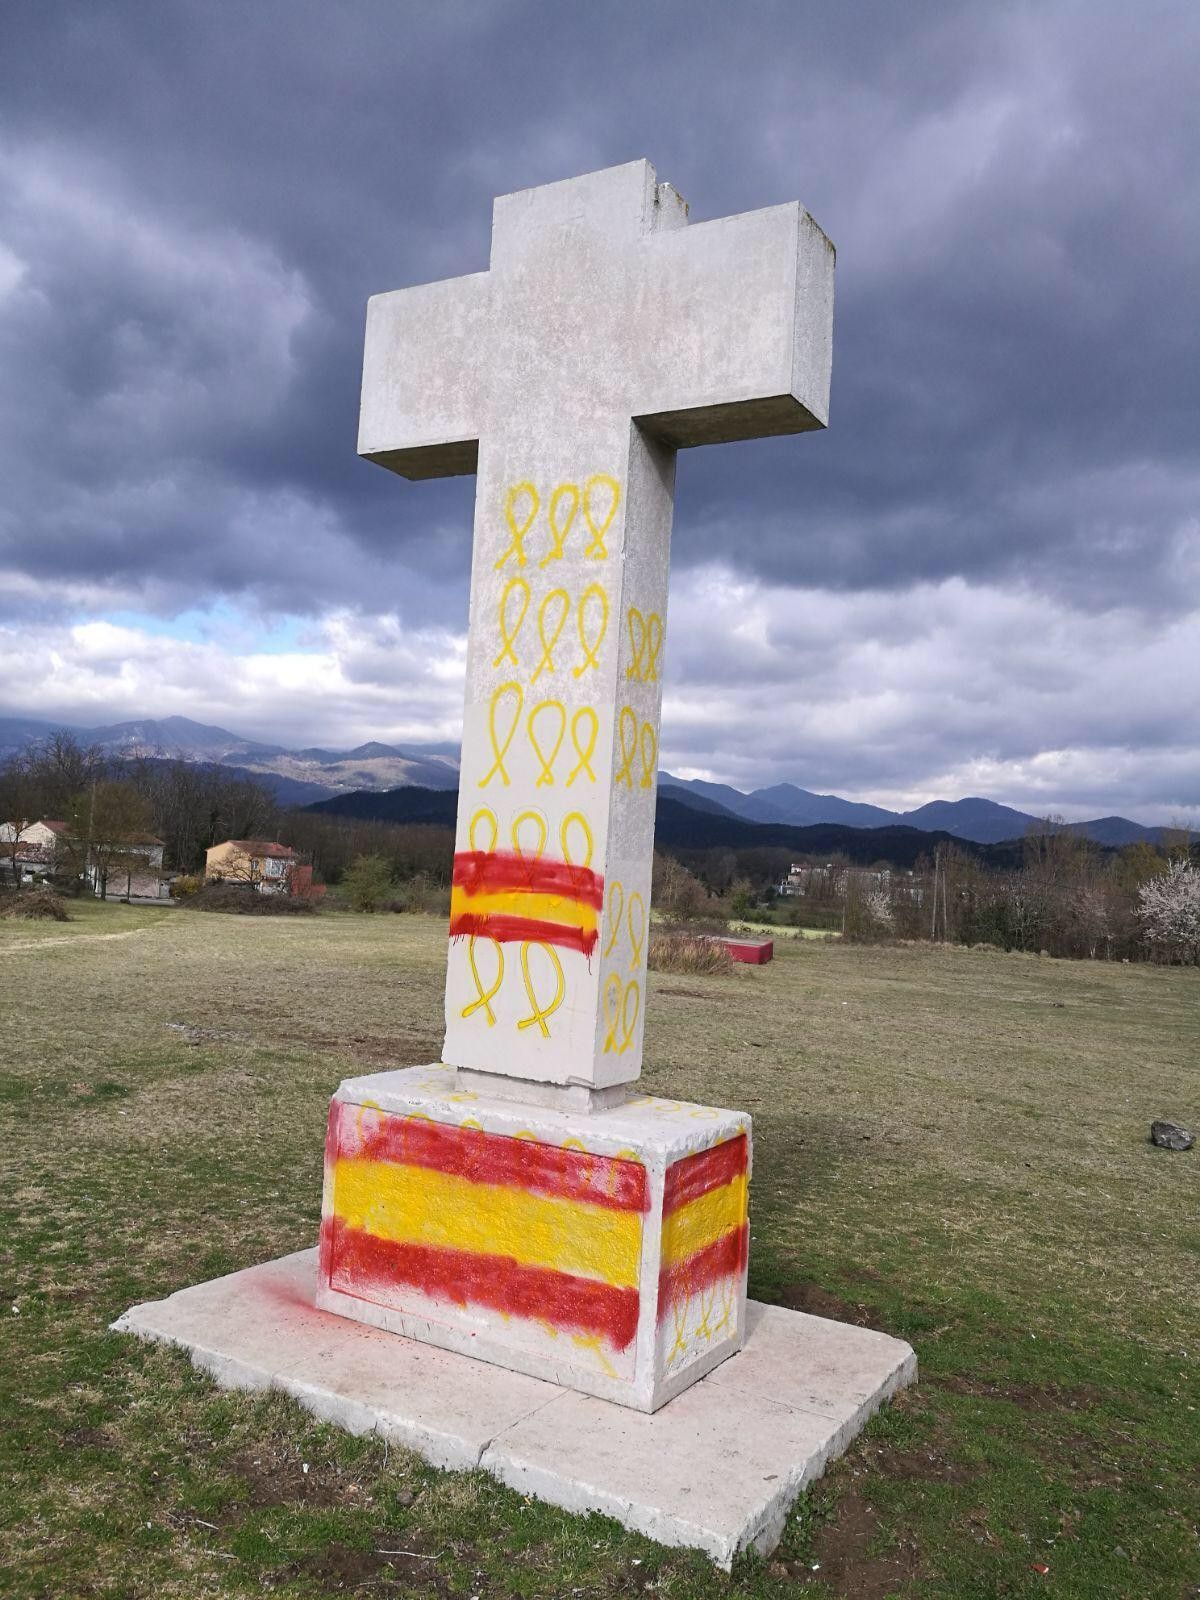 El monument ha aparegut aquest matí pintat amb diverses banderes espanyoles.